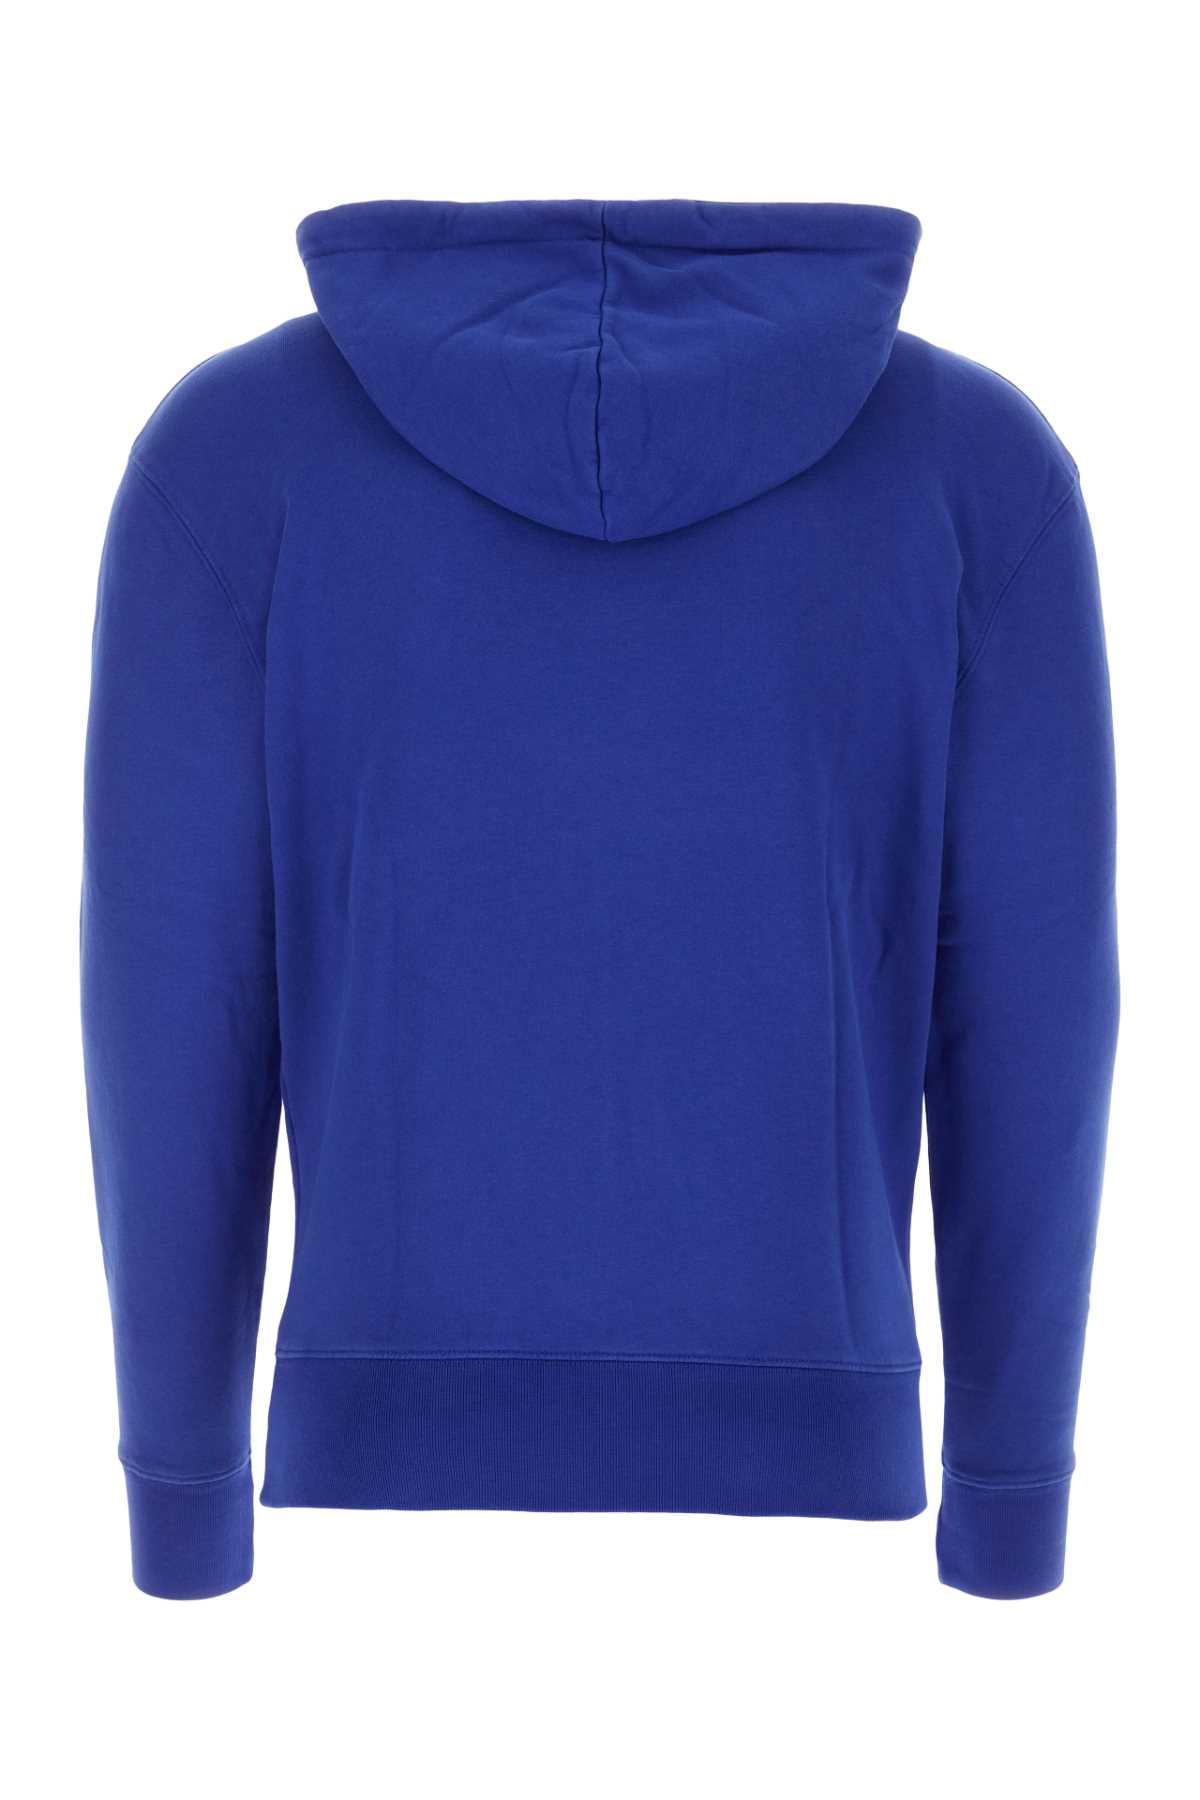 Maison Kitsuné Blue Cotton Sweatshirt In P485